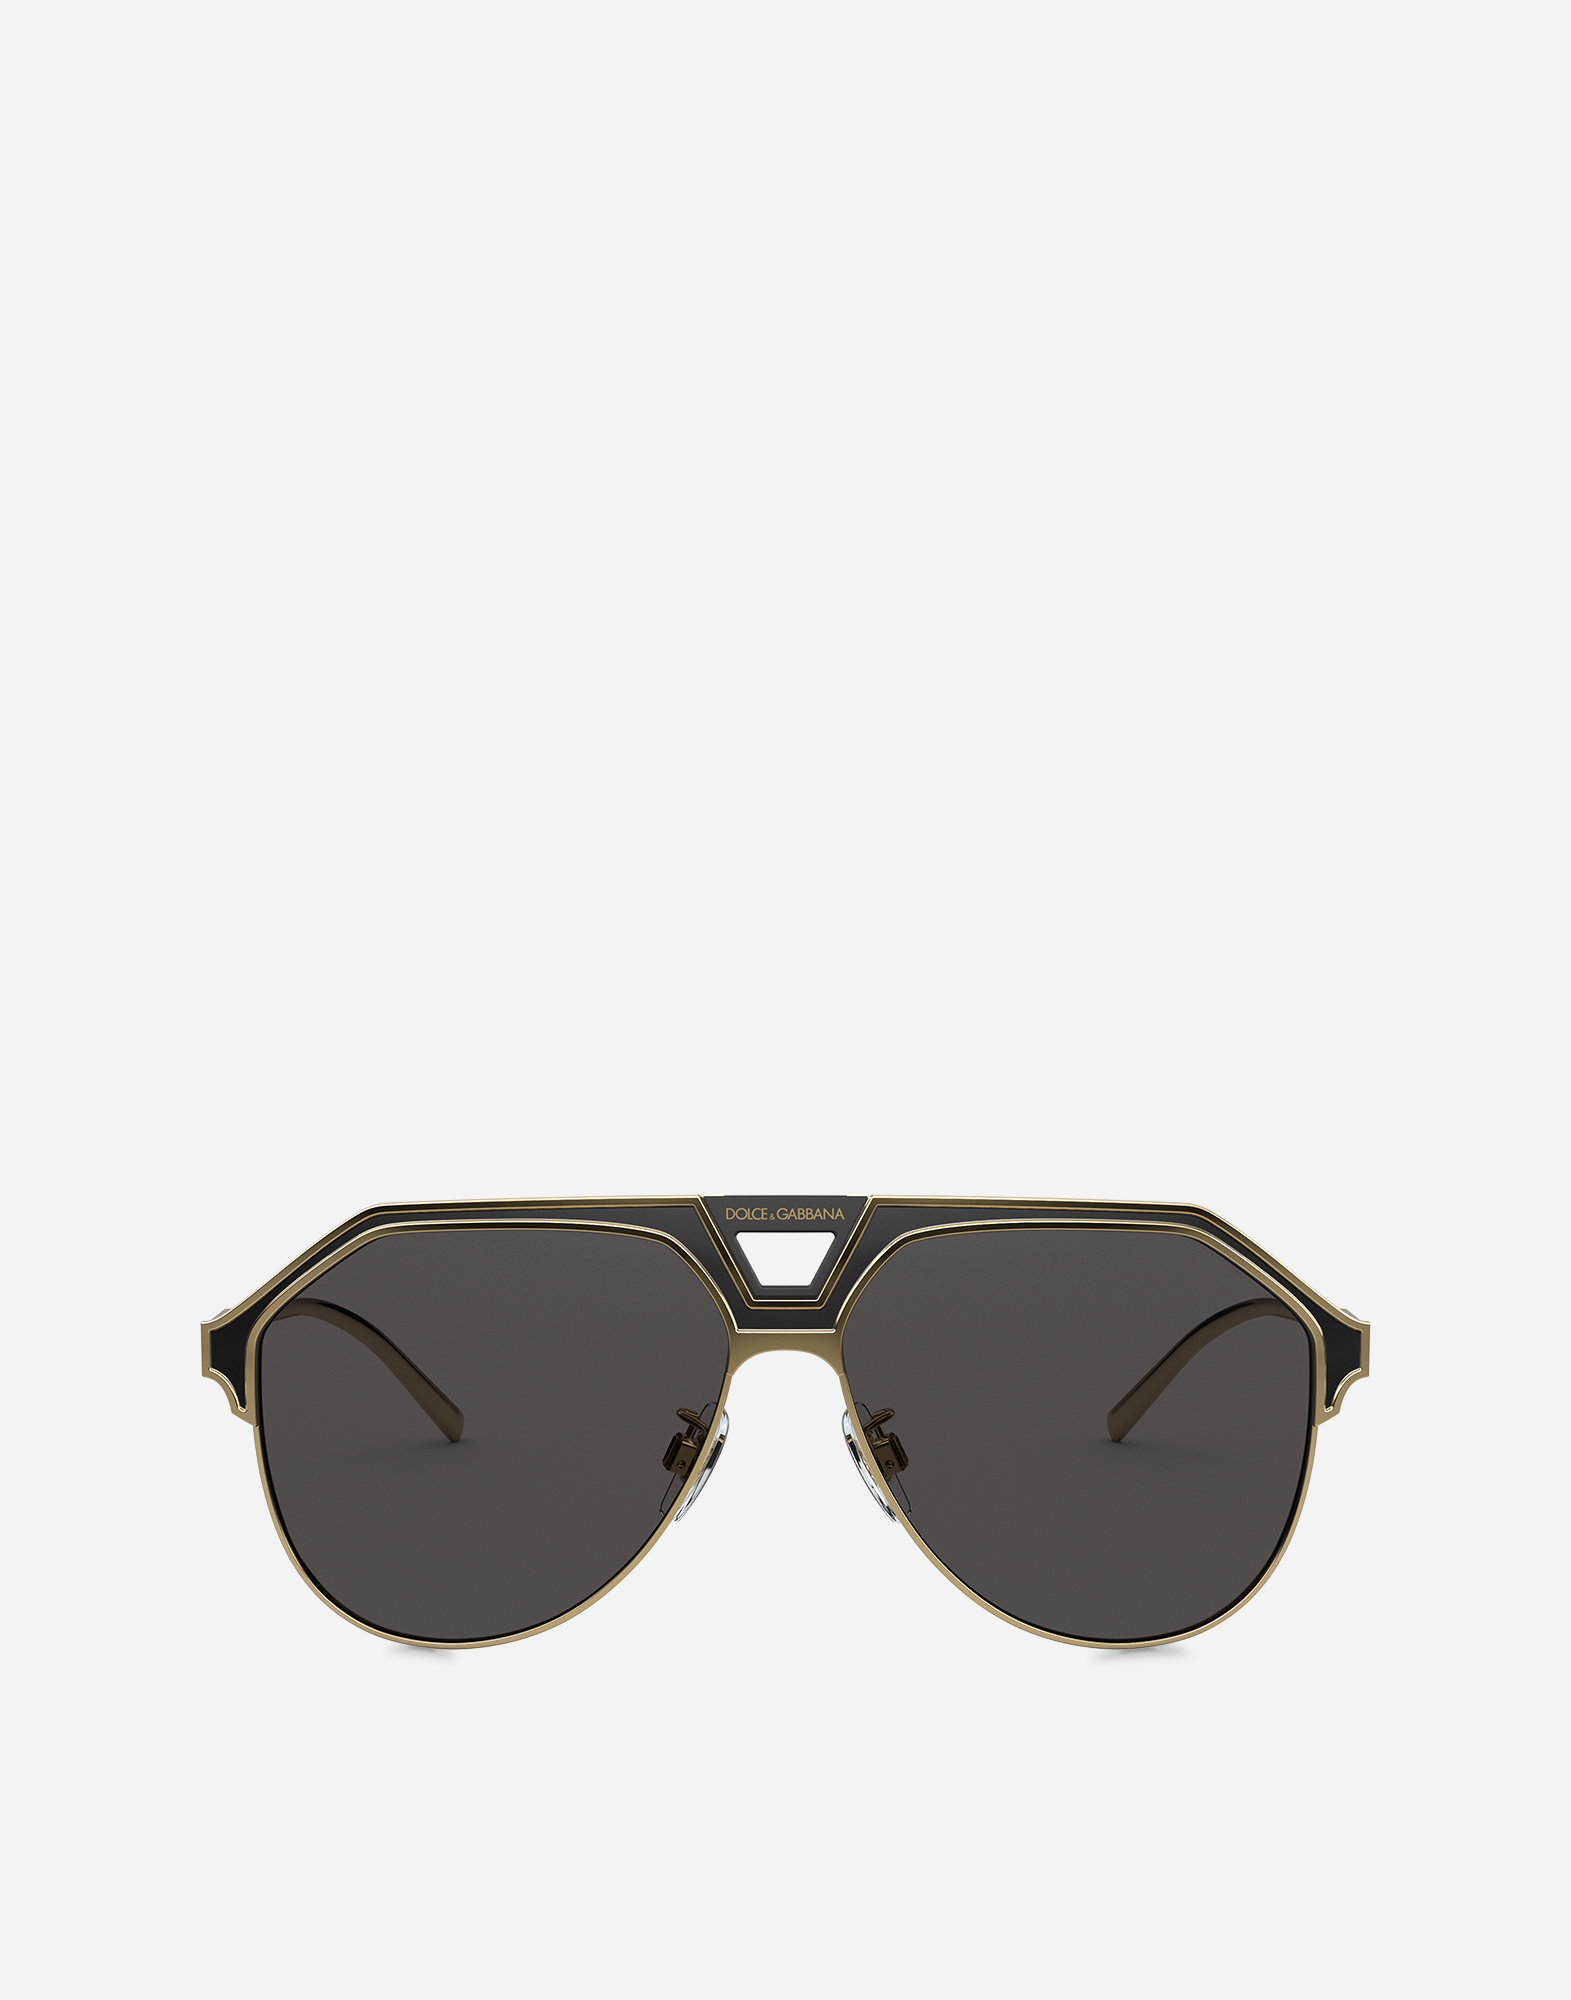 Miami sunglasses in Gold